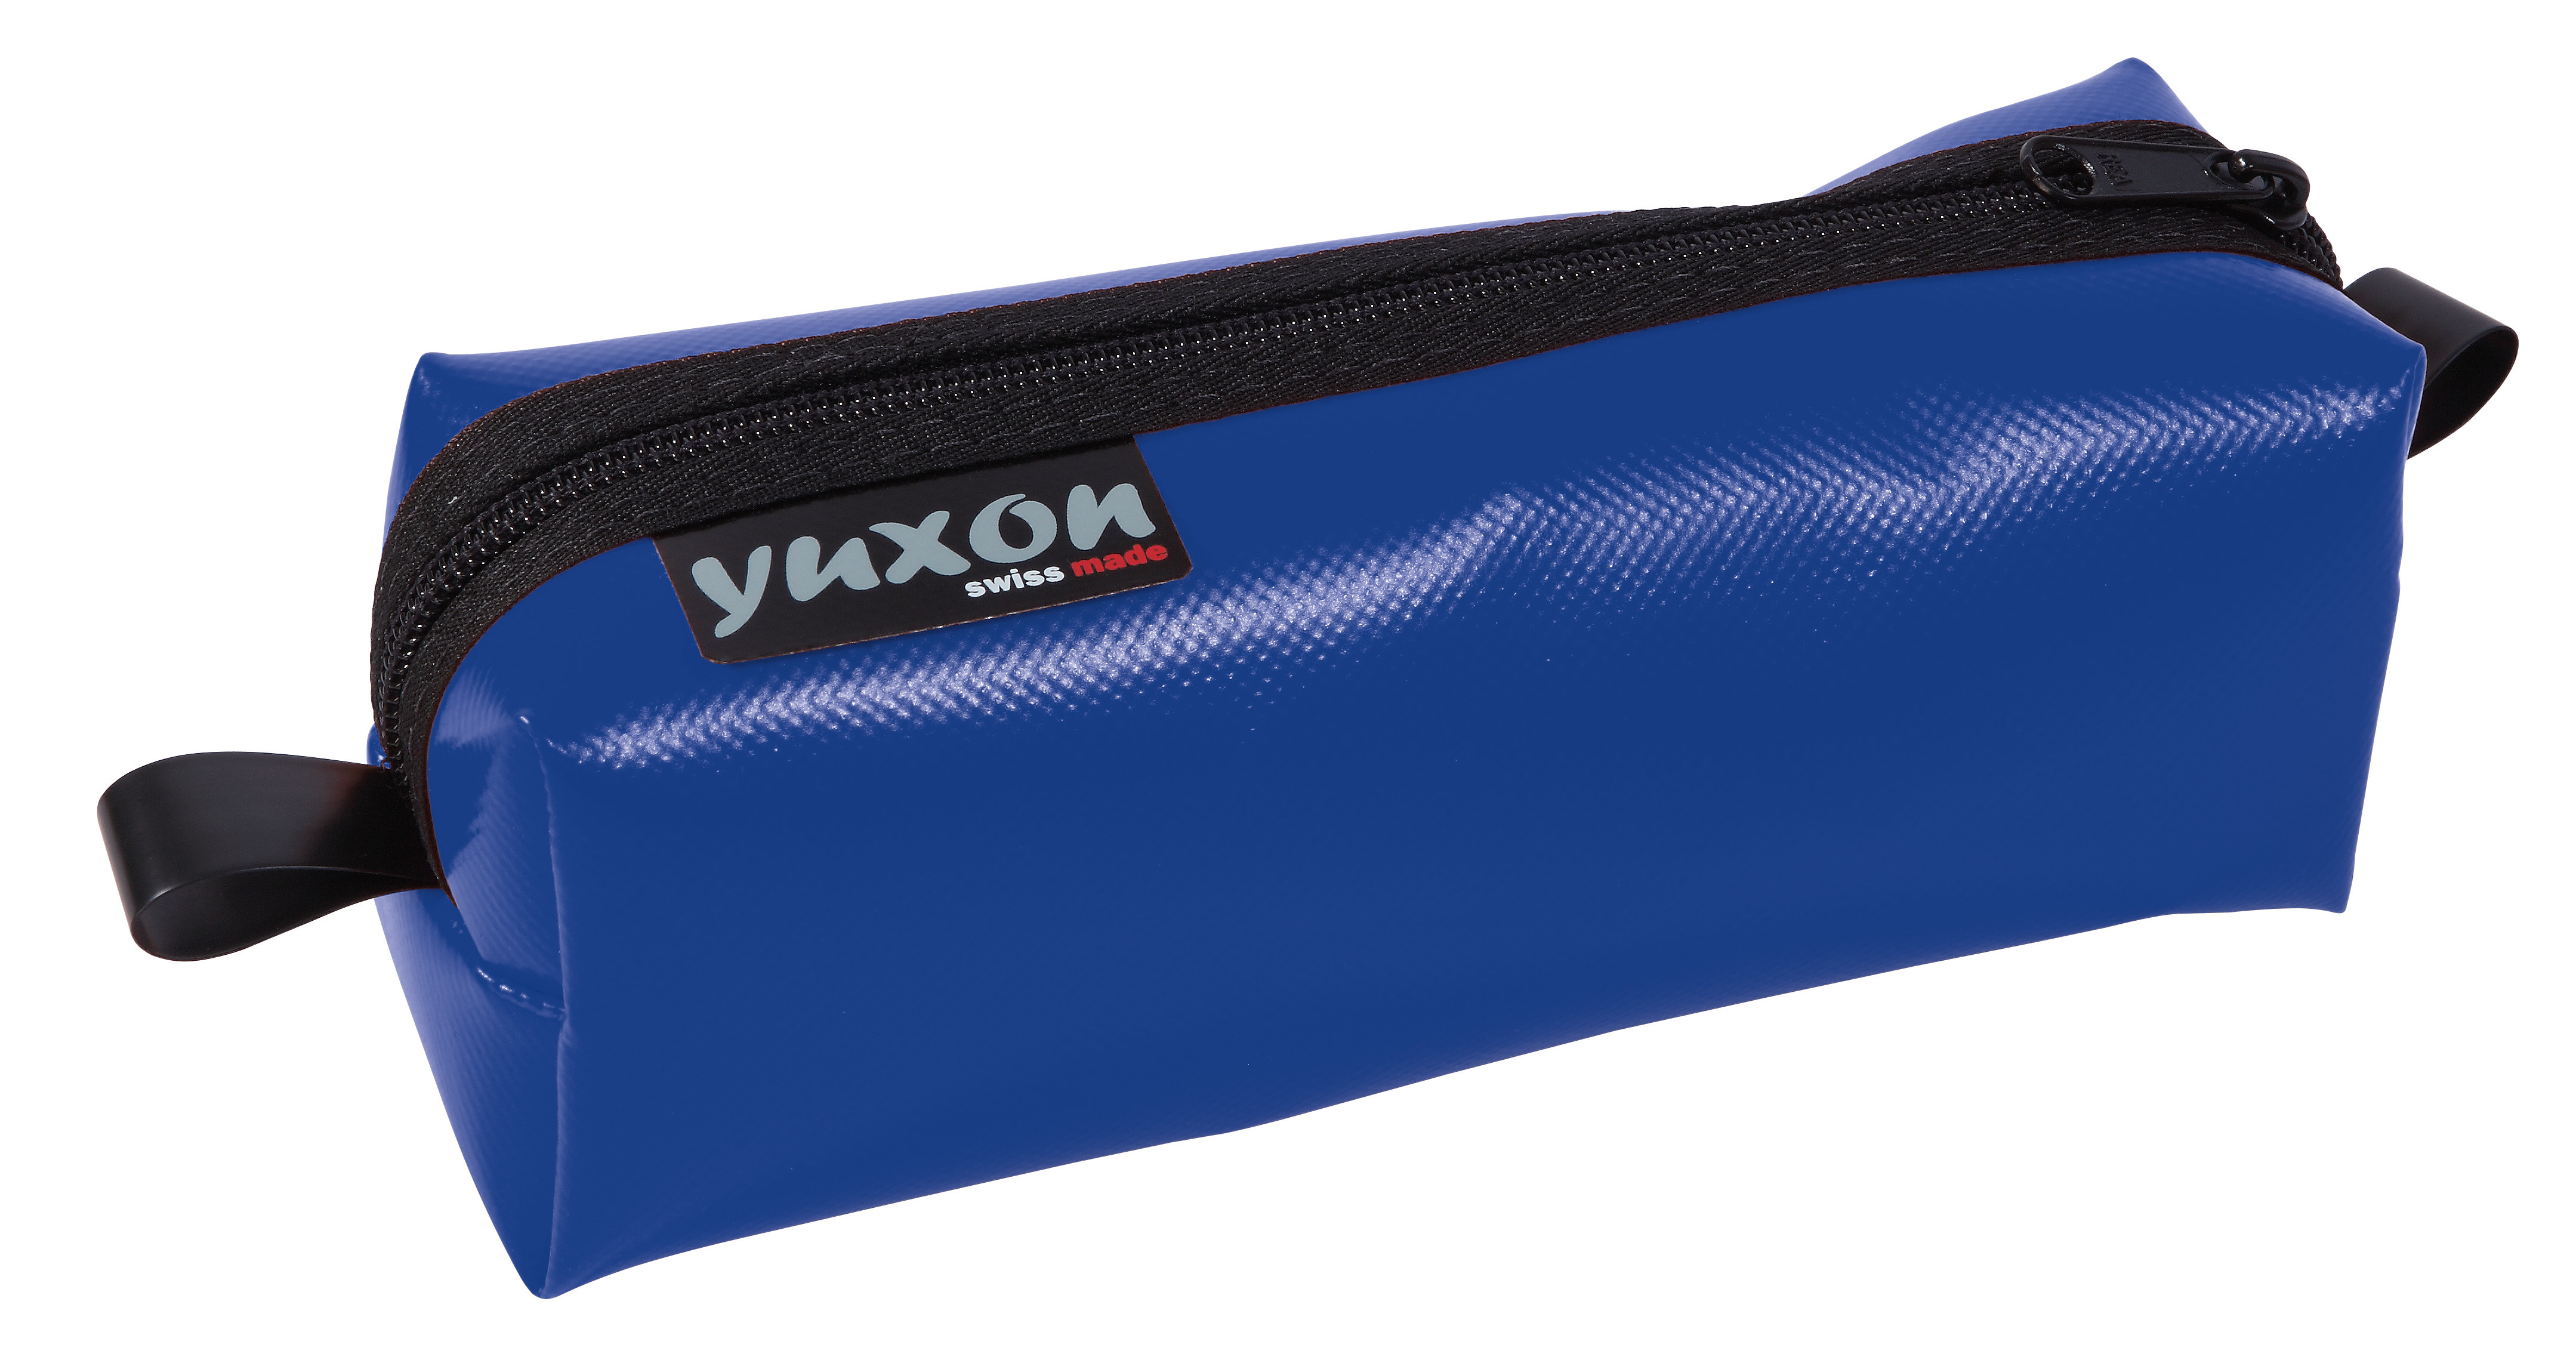 YUXON Trousse Maxi 8900.03 bleu 200x75x65mm bleu 200x75x65mm